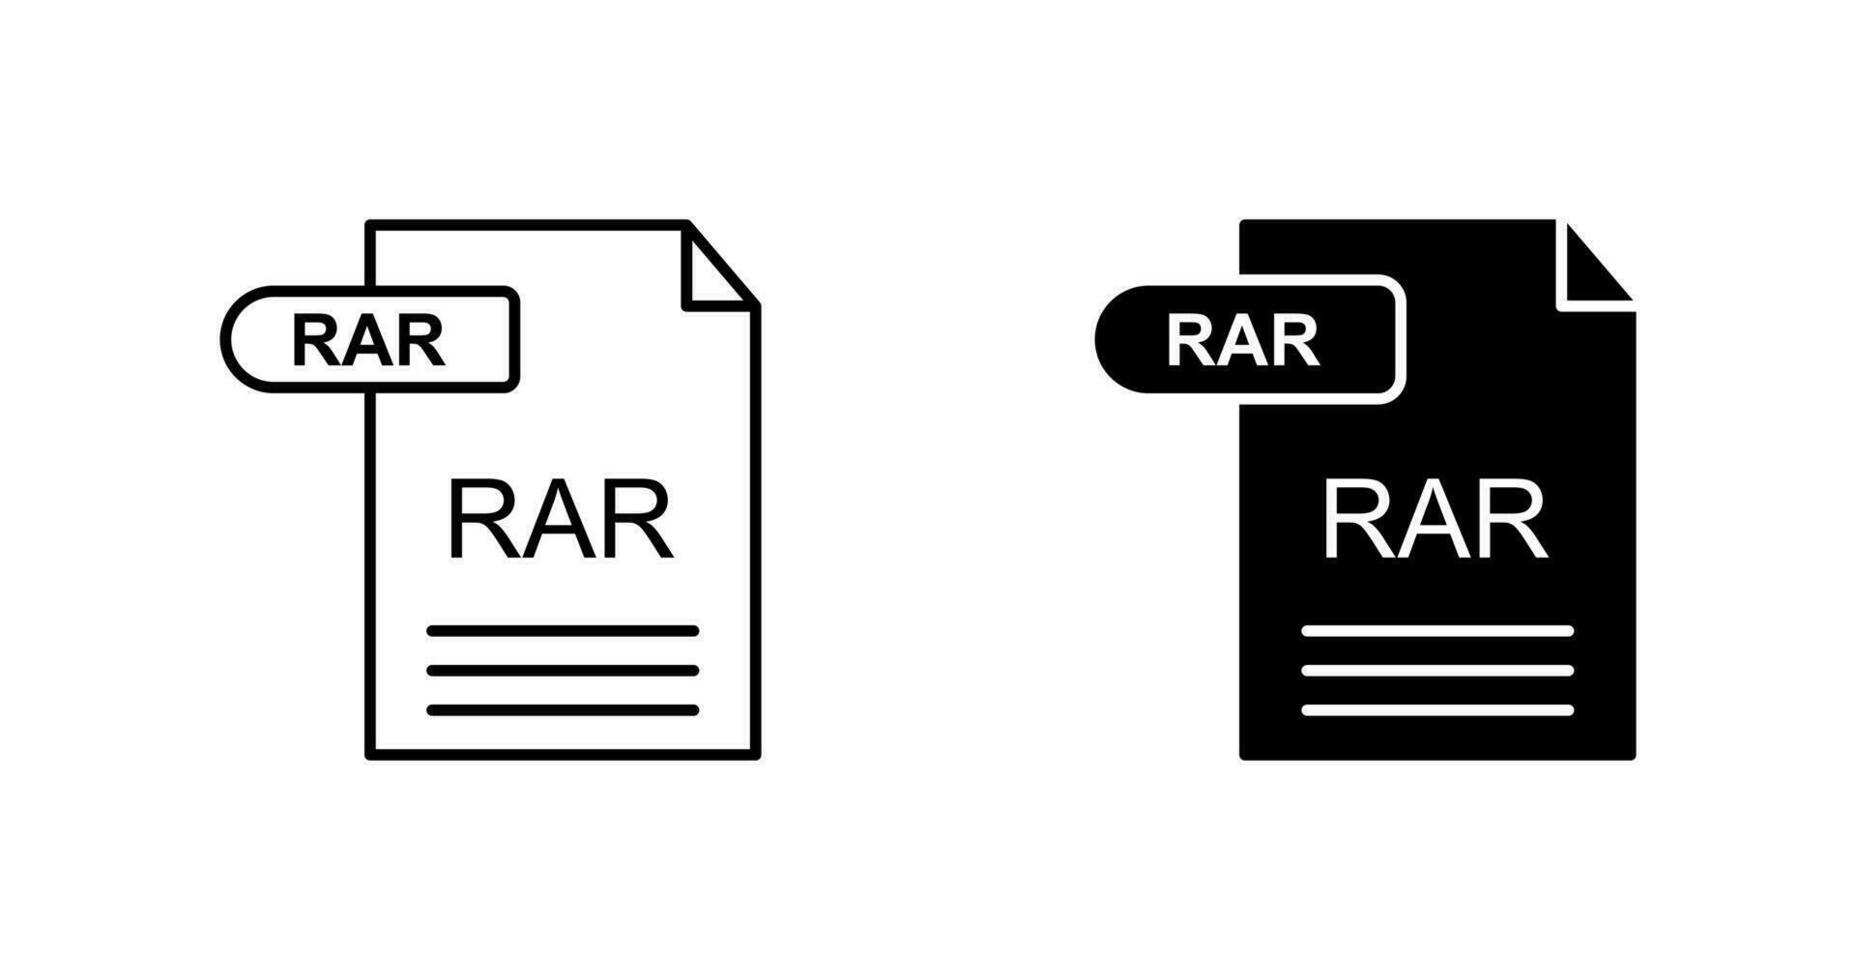 rar-Vektorsymbol vektor